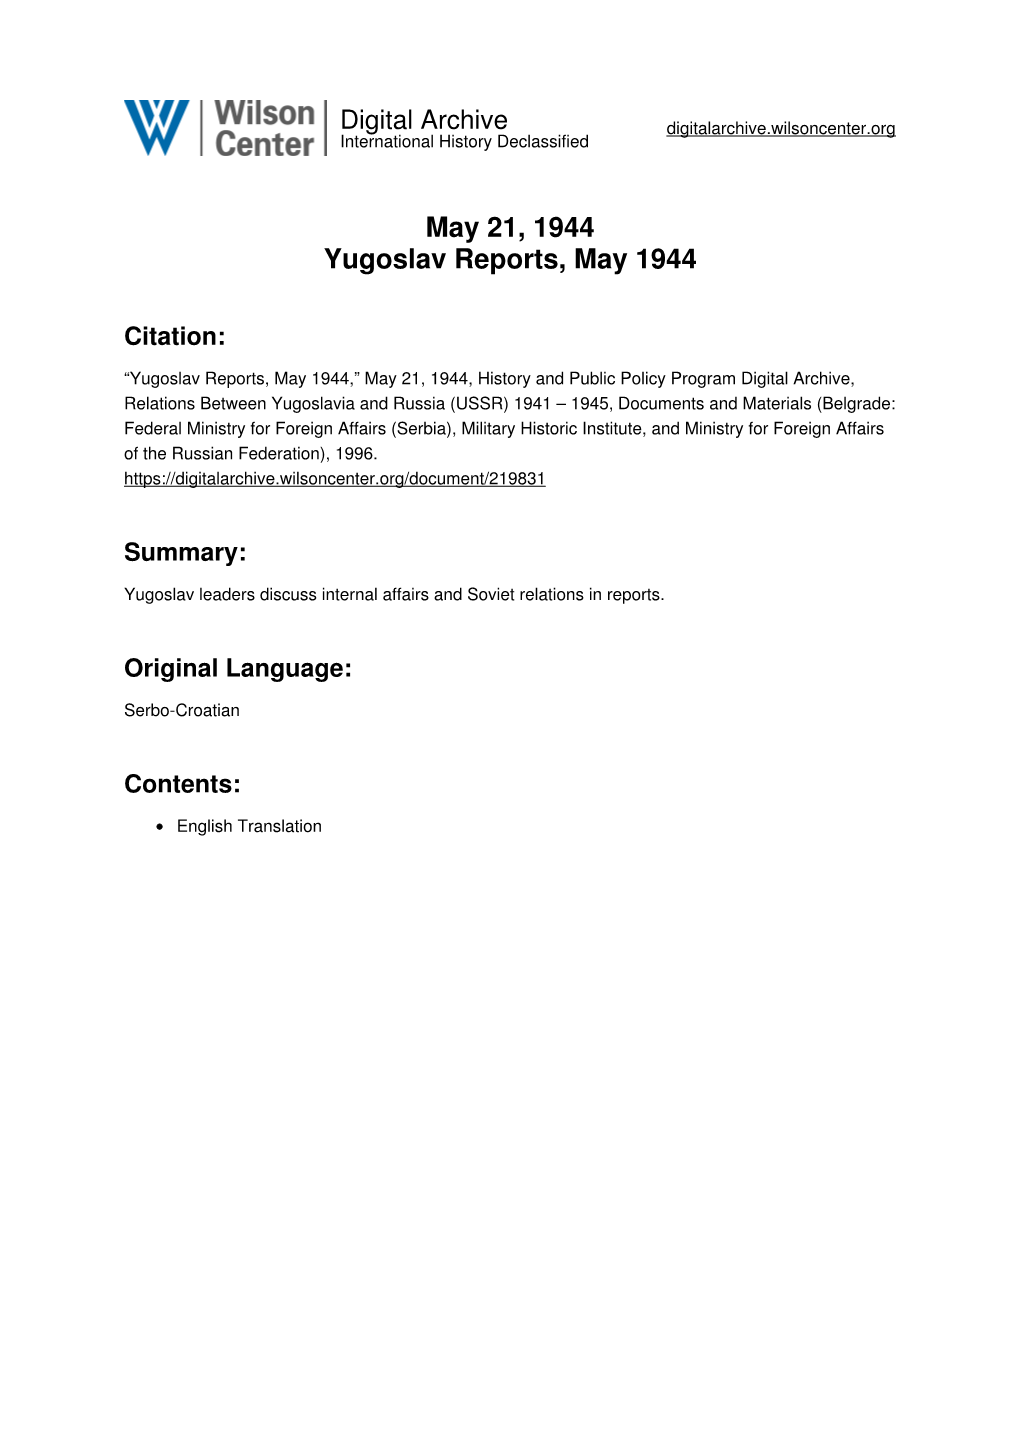 May 21, 1944 Yugoslav Reports, May 1944